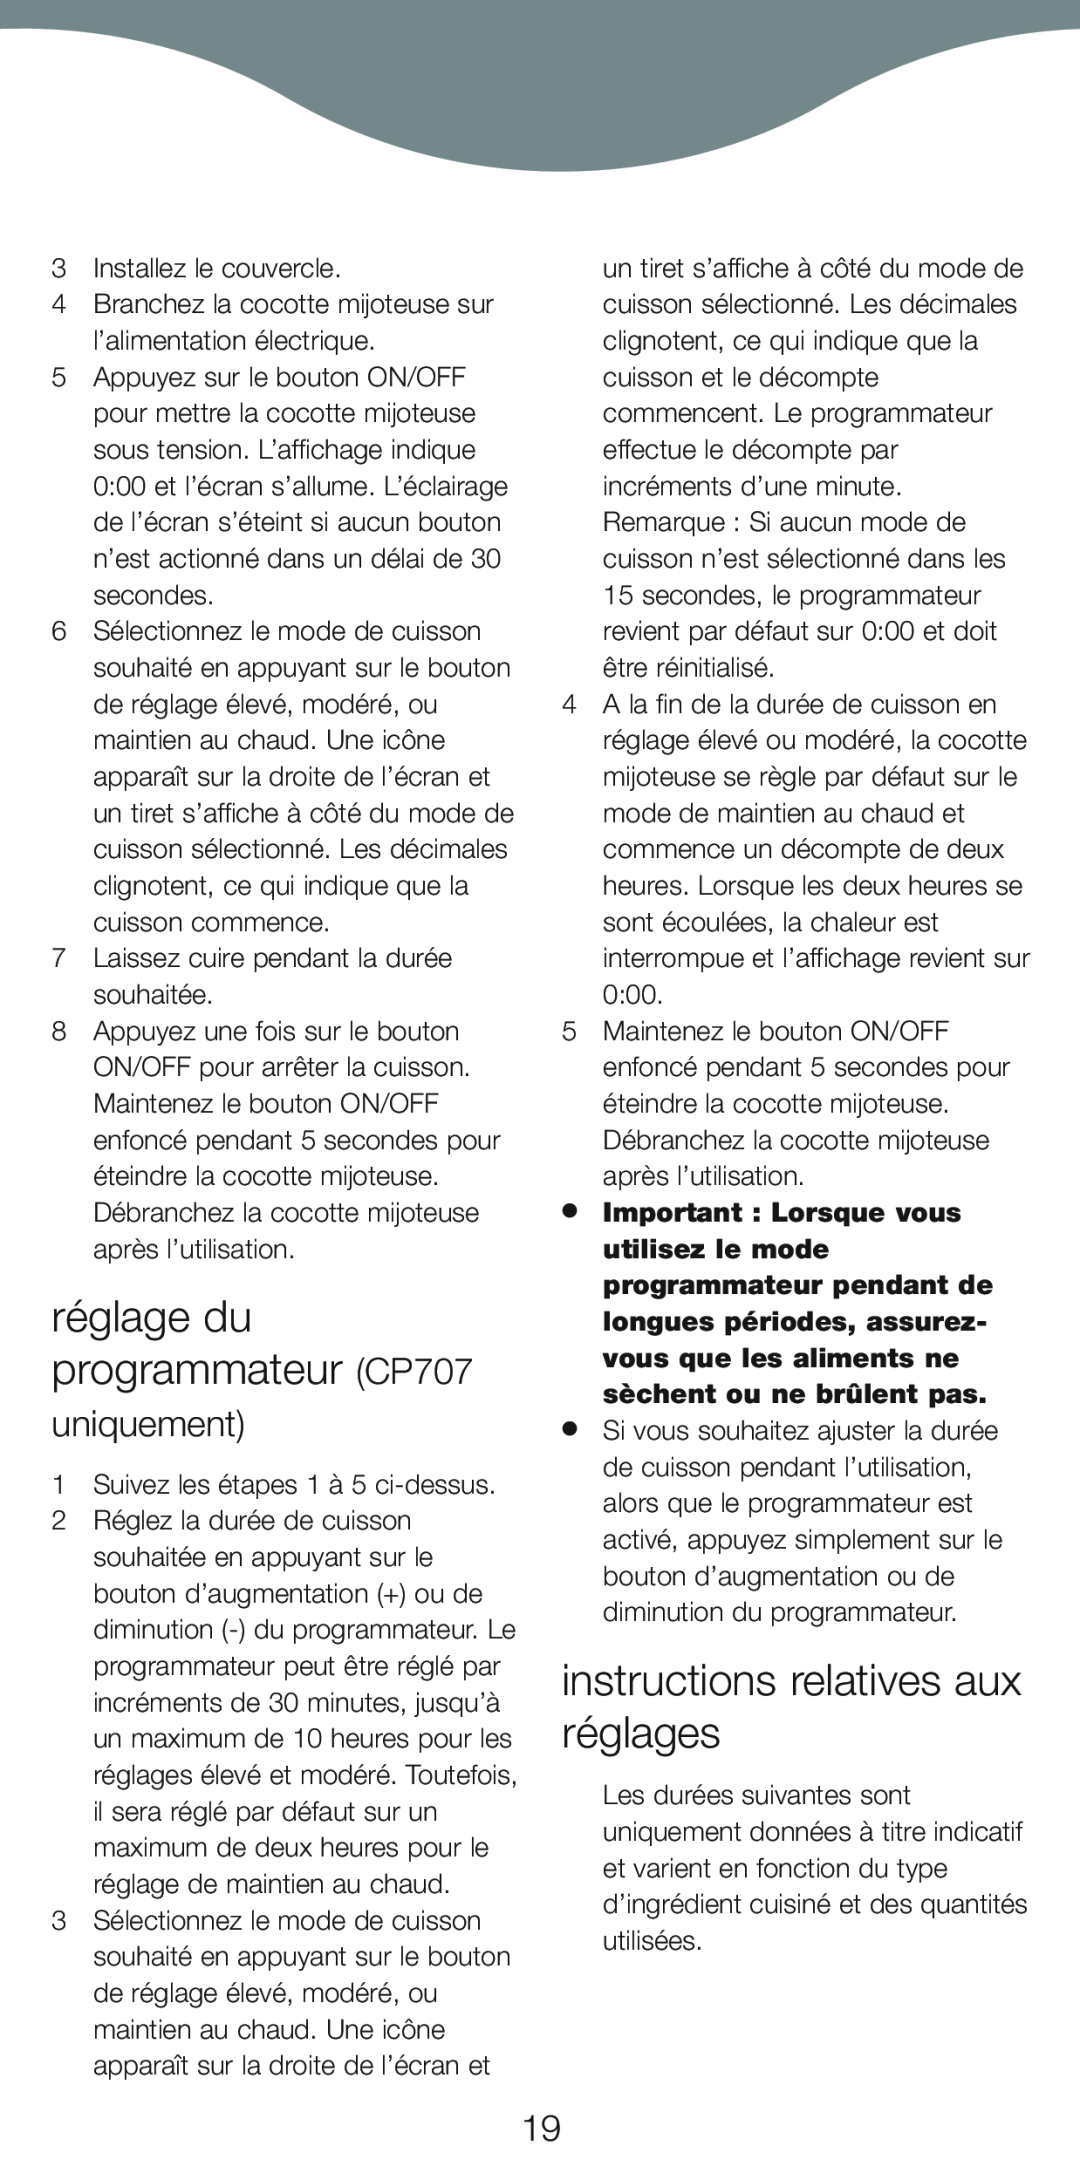 Kenwood CP706 manual réglage du programmateur CP707, instructions relatives aux réglages, uniquement 